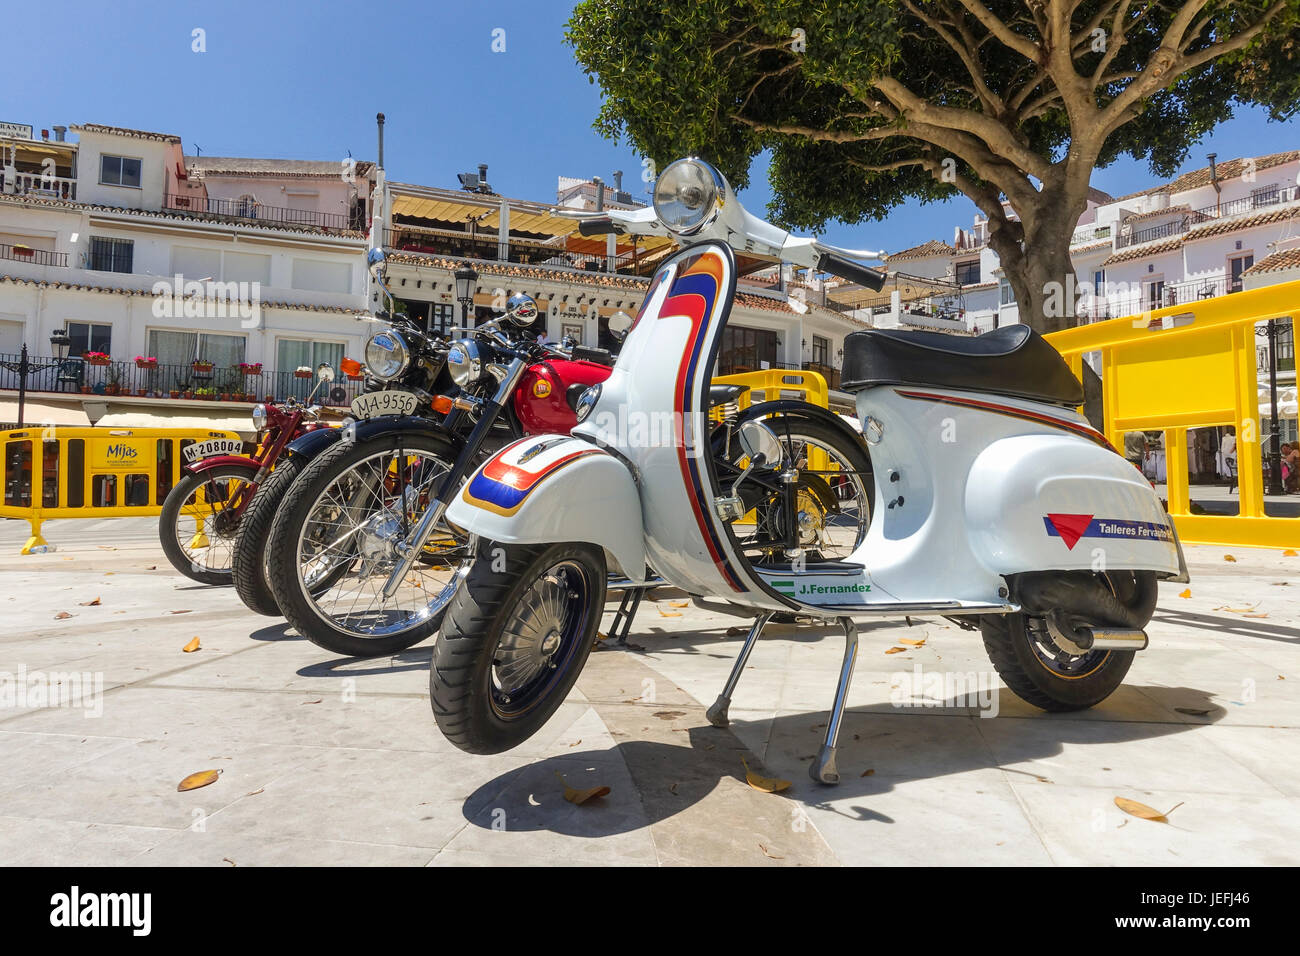 Rangée de Classic bikes scooters Vespa avec en face, sur l'affichage à une moto classique rencontre à Mijas, Andalousie, espagne. Banque D'Images